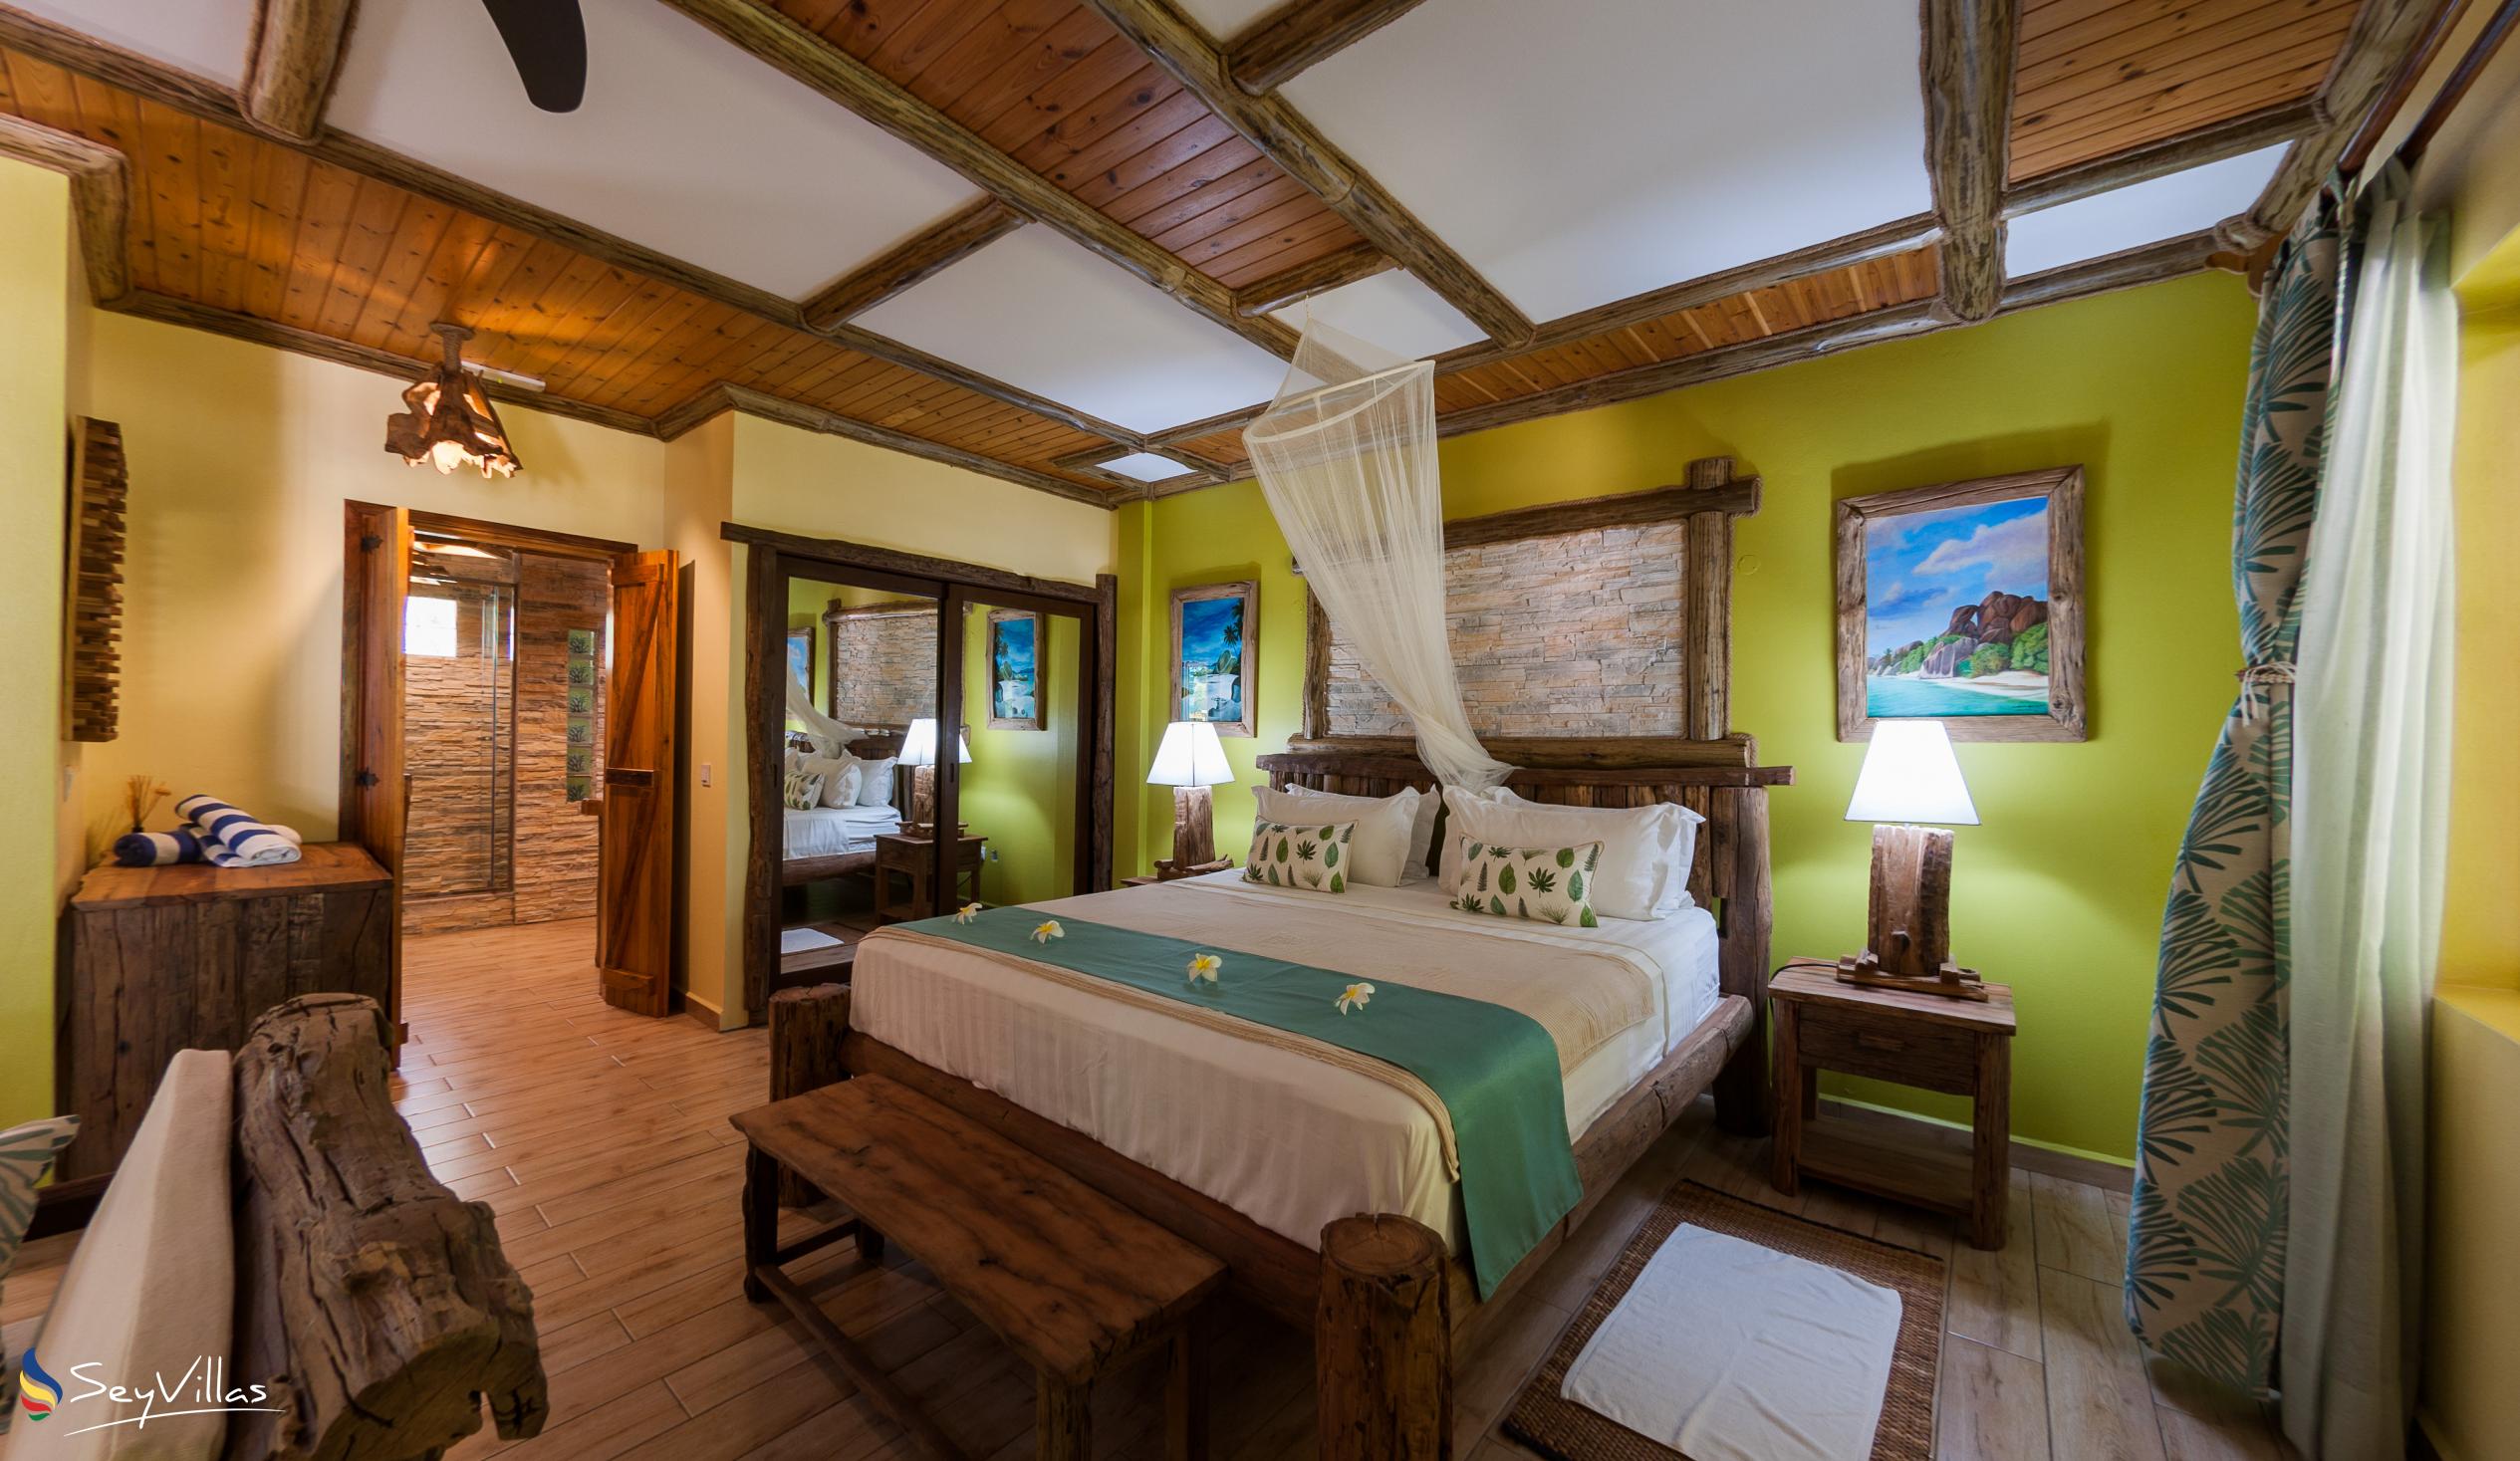 Photo 73: Anse Severe Beach Villa - Deluxe Villa Top Floor - La Digue (Seychelles)